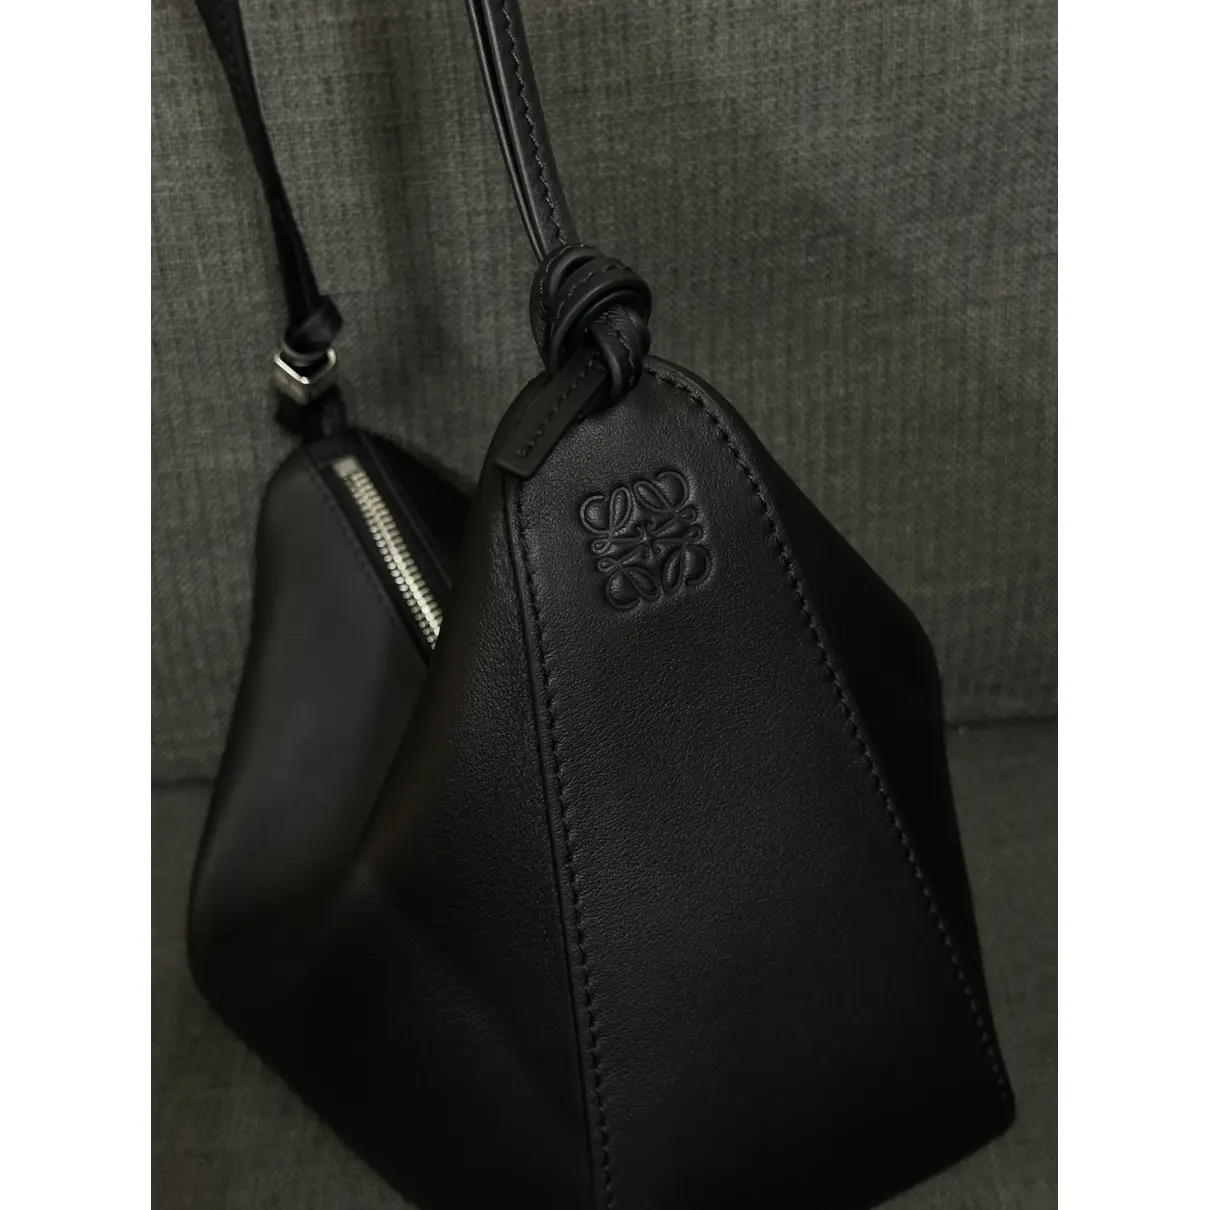 Buy Loewe Hammock Hobo leather handbag online